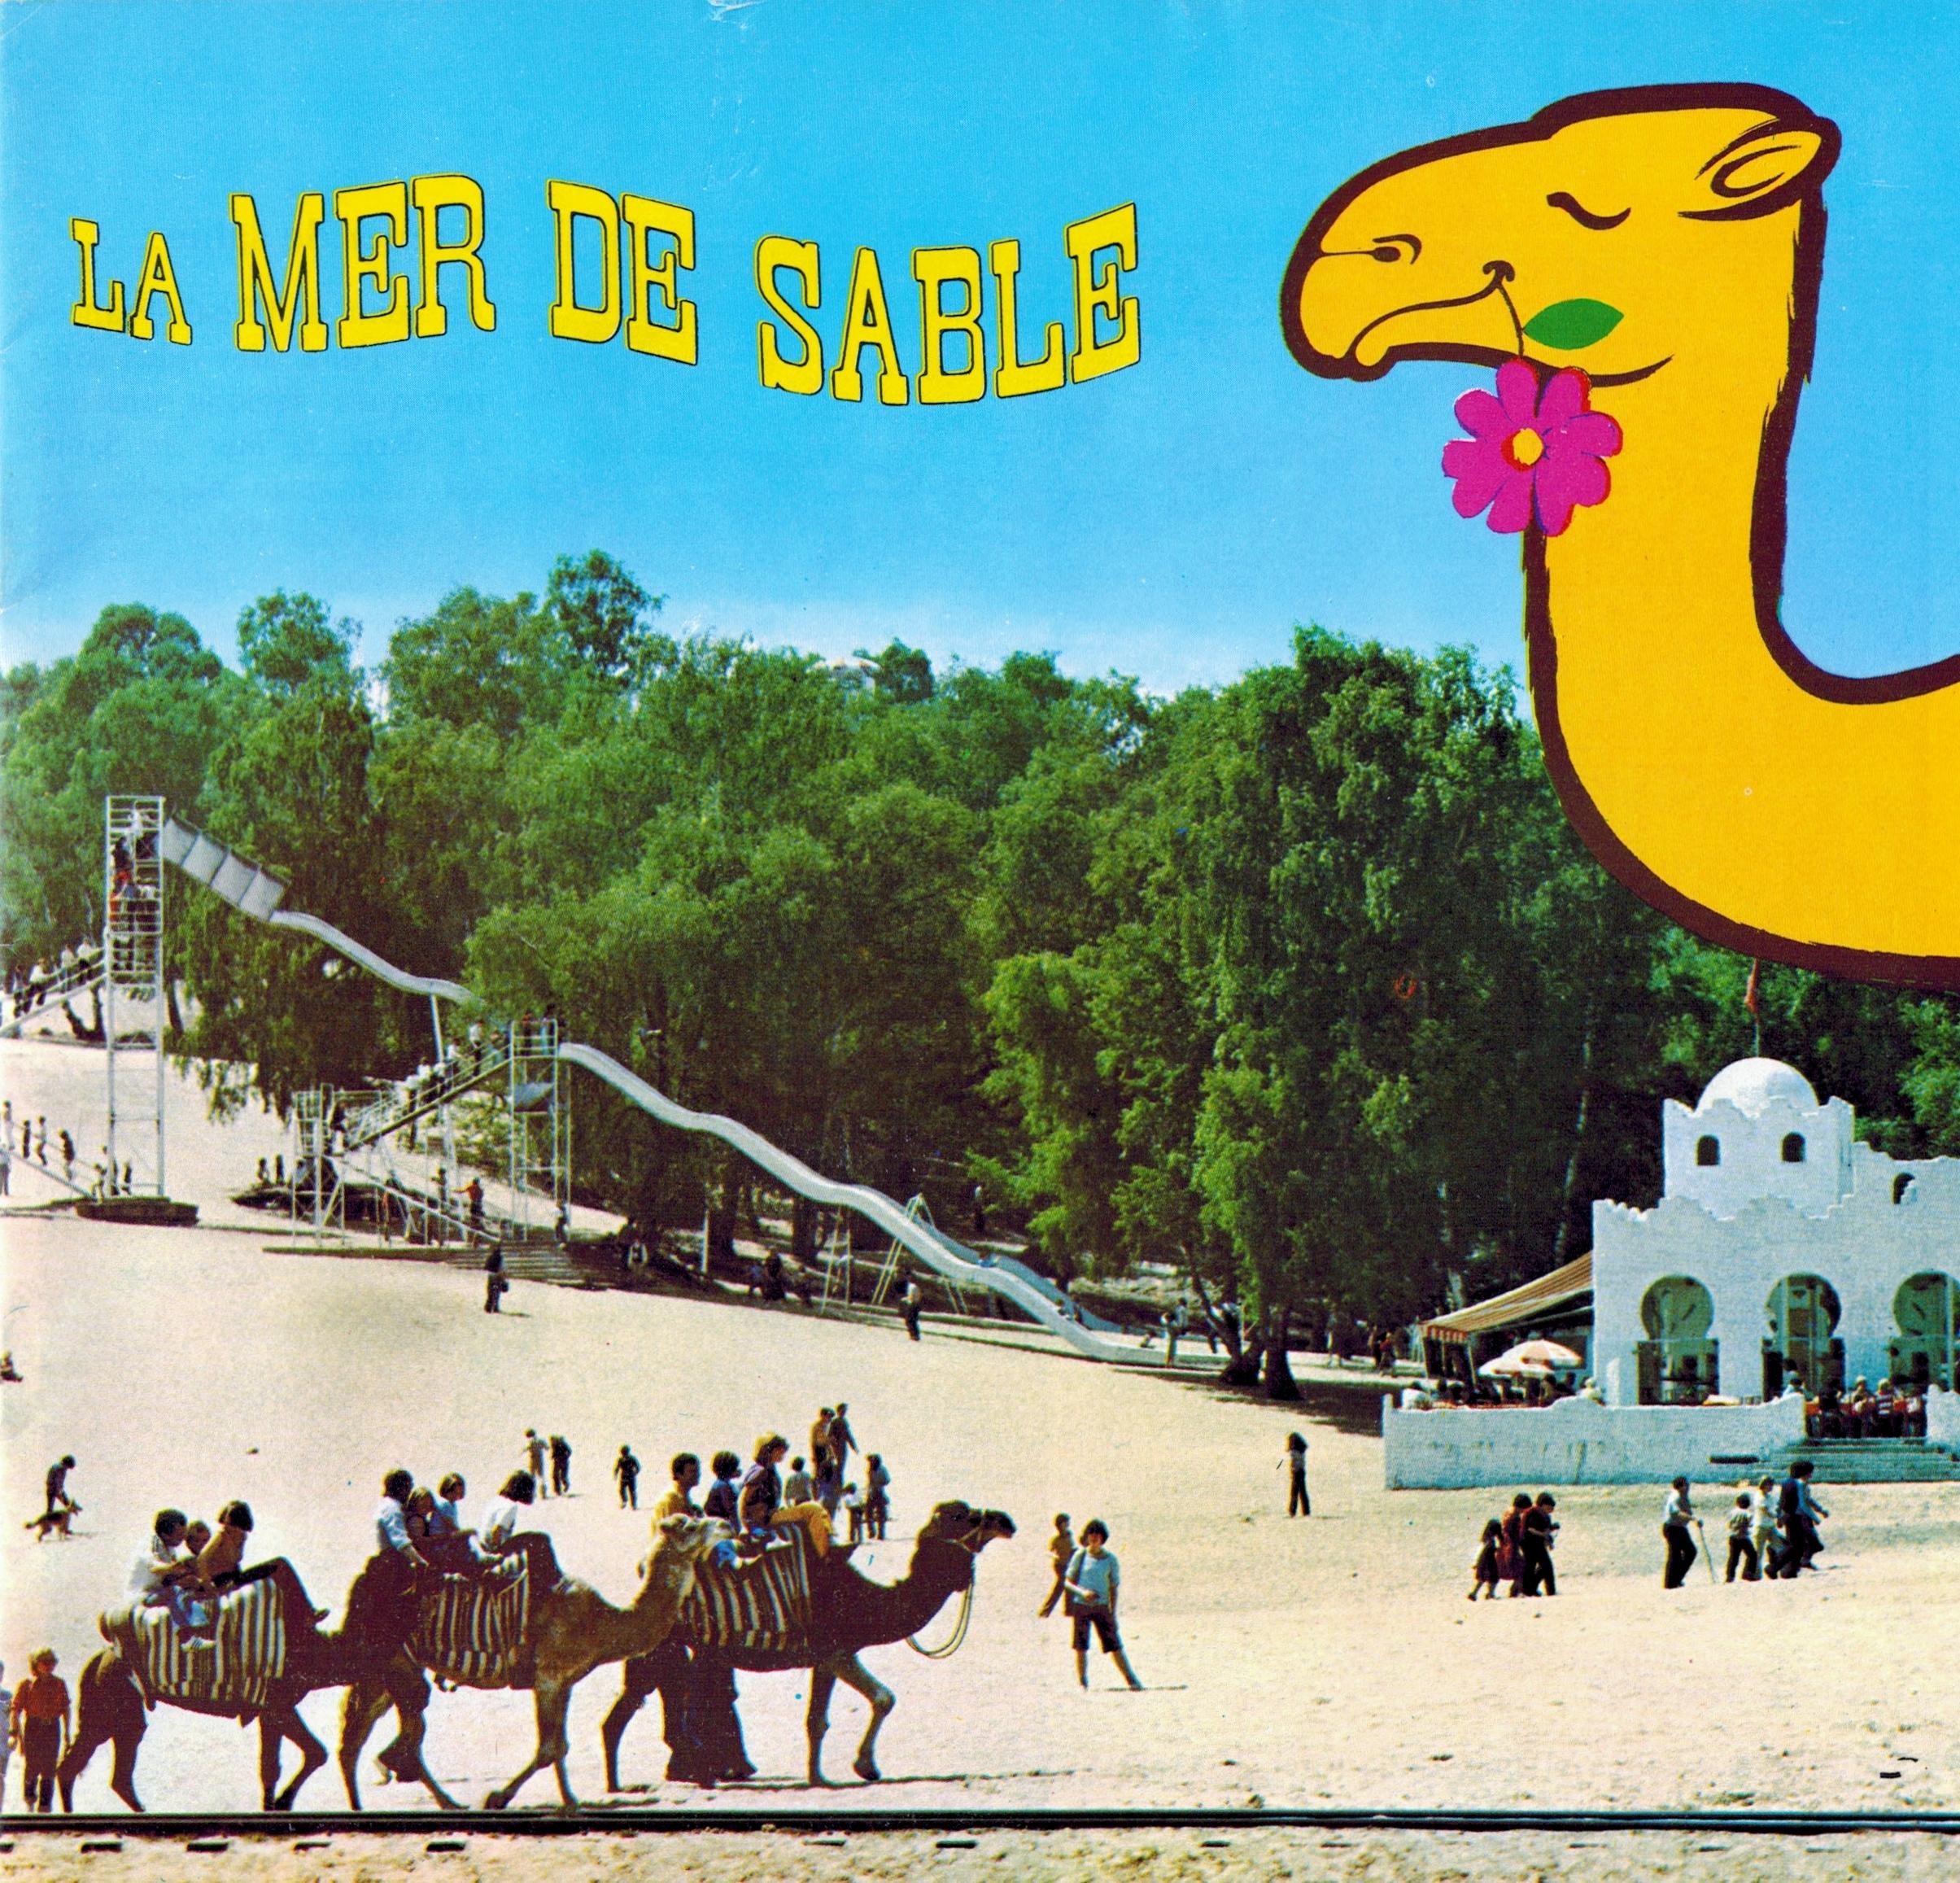 Image publicitaire de la Mer de Sable, avec des chameaux et un grand toboggan